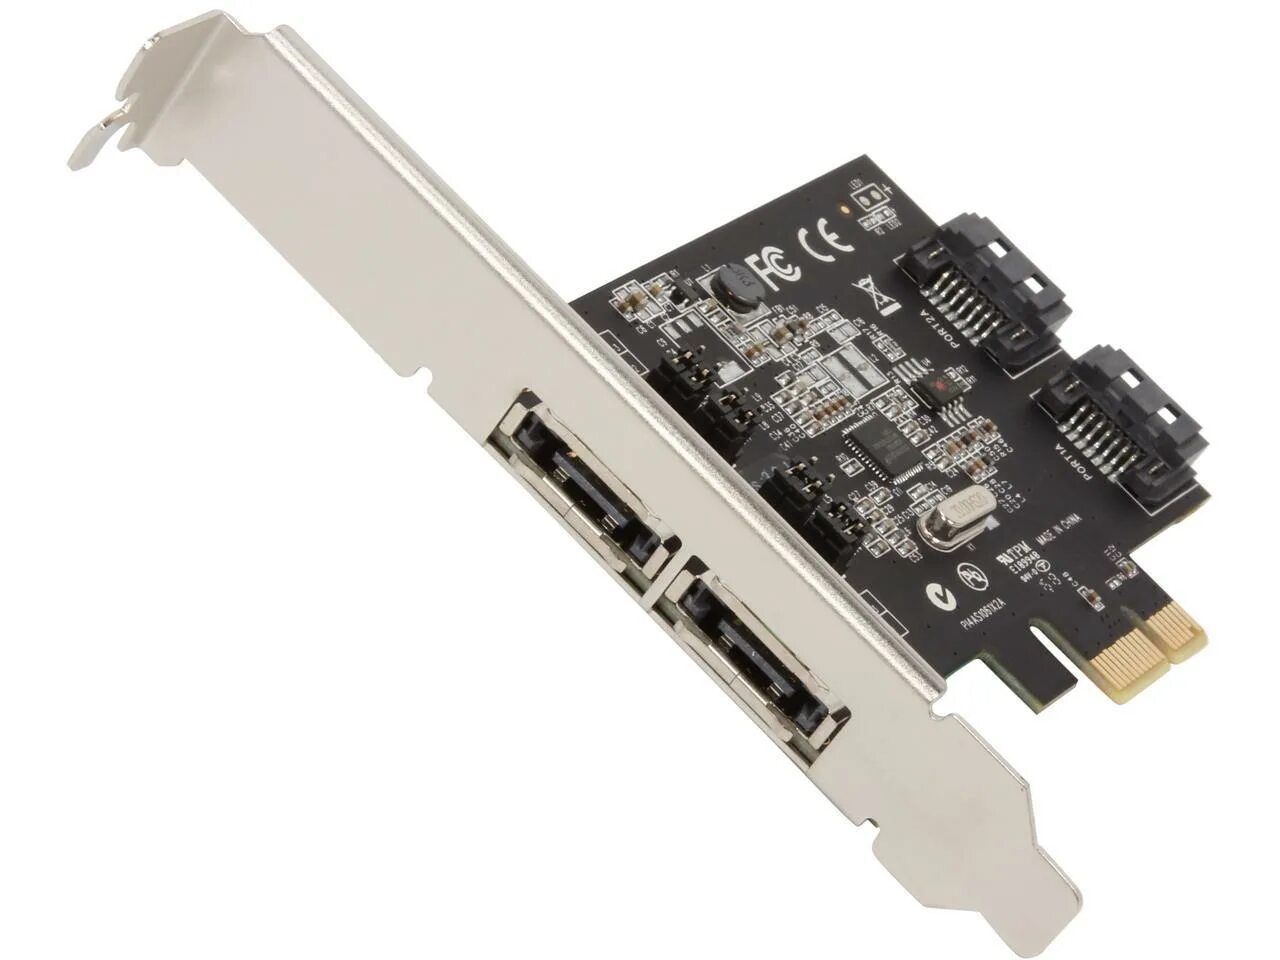 Контроллер PCI Express SATA. PCI Express SATA 3 контроллер. X1 PCI Express SATA. PCIE 3.0 x1. Pci e 3.0 x1